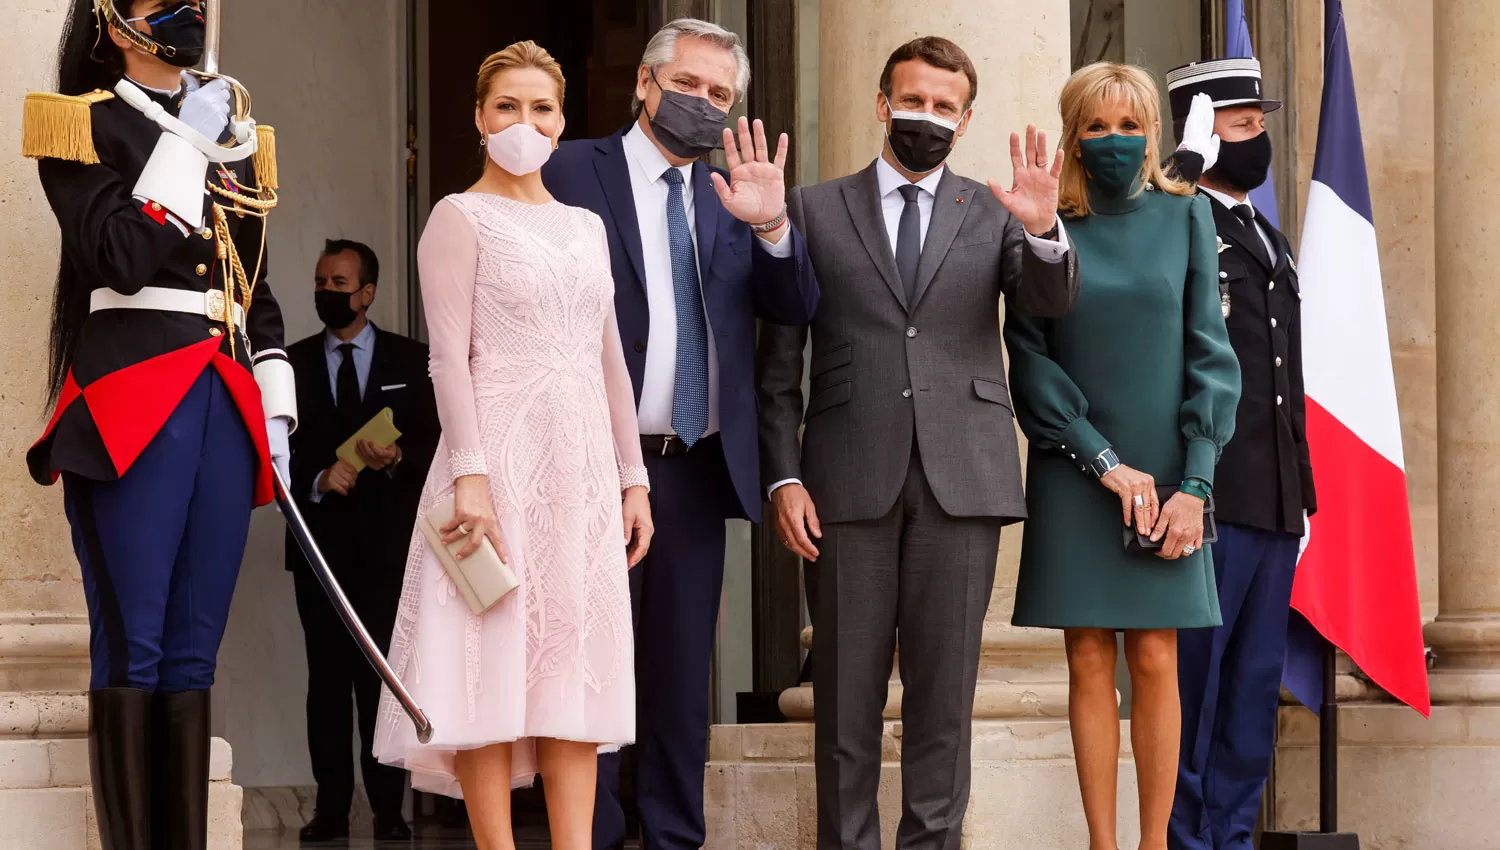 LA FOTO OFICIAL. Fabiola Yañez, Alberto Fernández, Emmanuel Macron y Brigitte Macron saludan a la prensa.